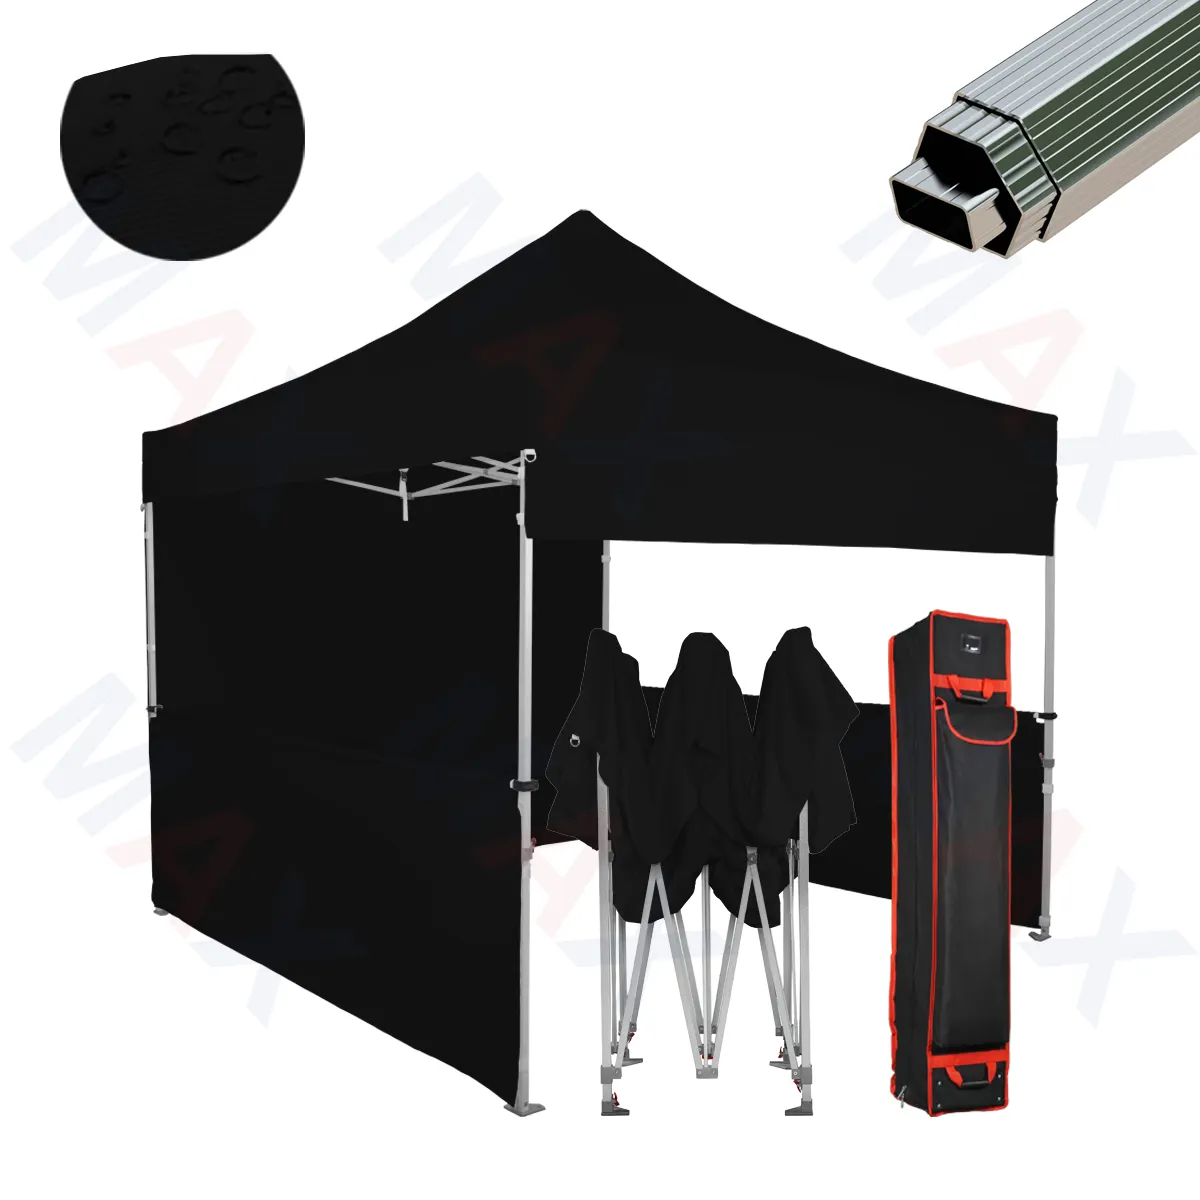 黒の広告テント10x10カスタムキャノピーメガアルミニウム展示テントポップアップグランドオープニングパーティーテント